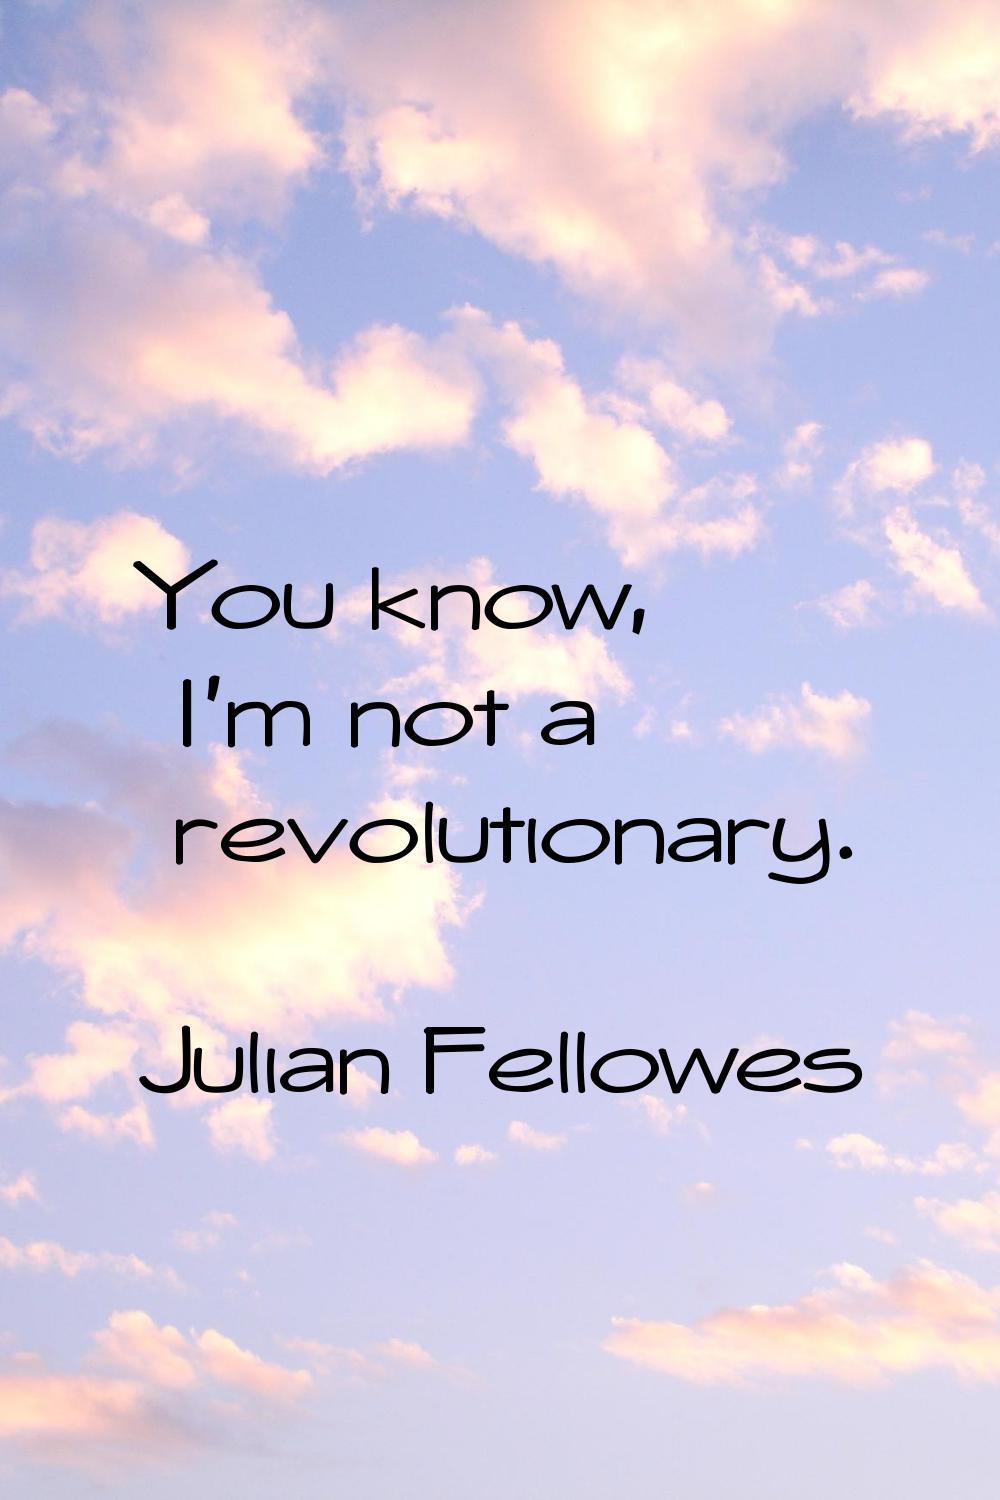 You know, I'm not a revolutionary.